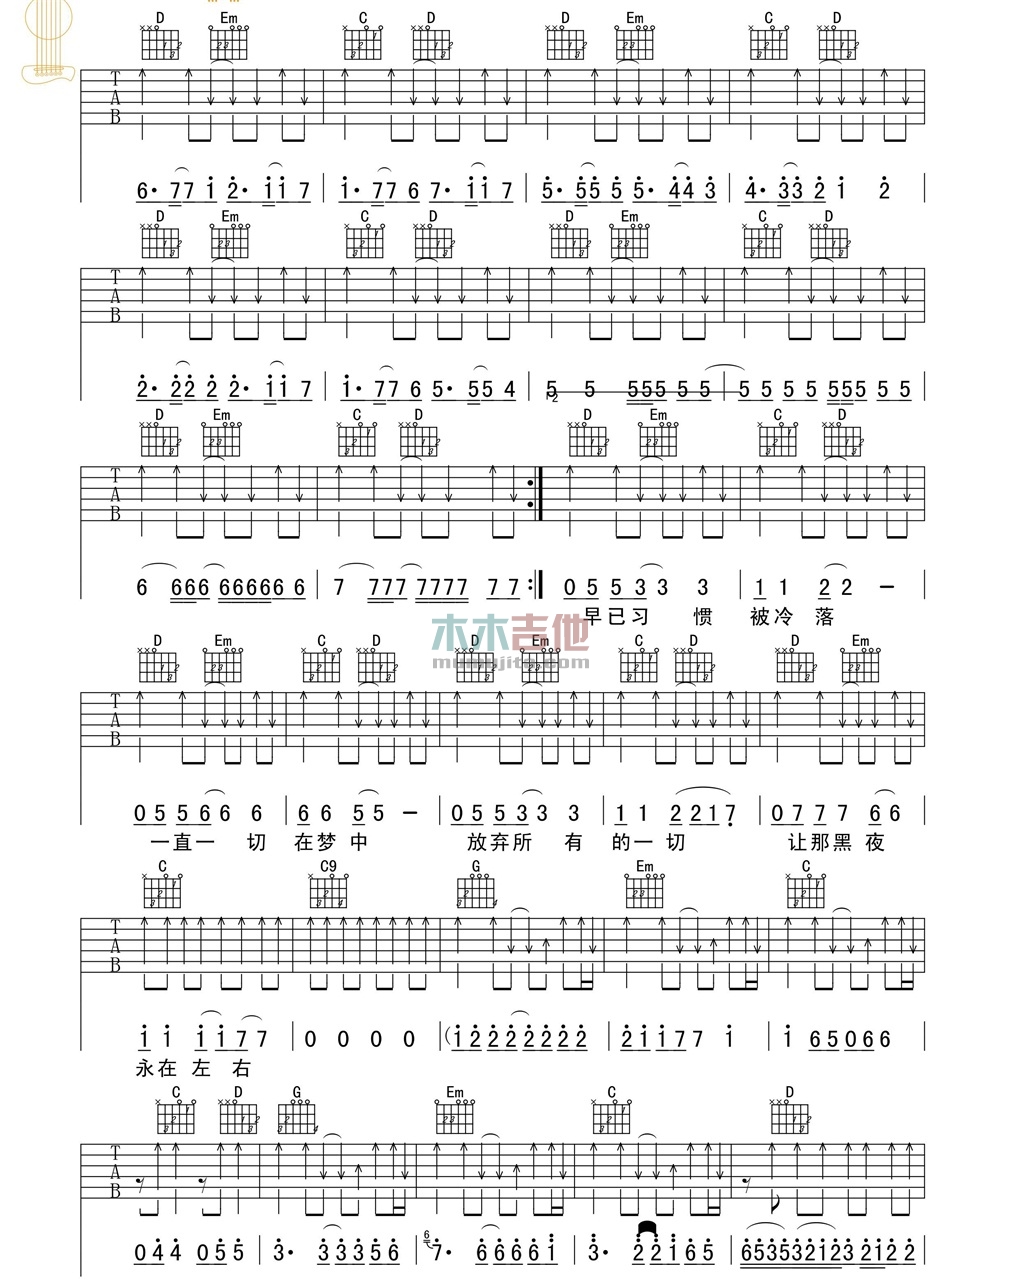 面孔乐队《影子》吉他谱-Guitar Music Score